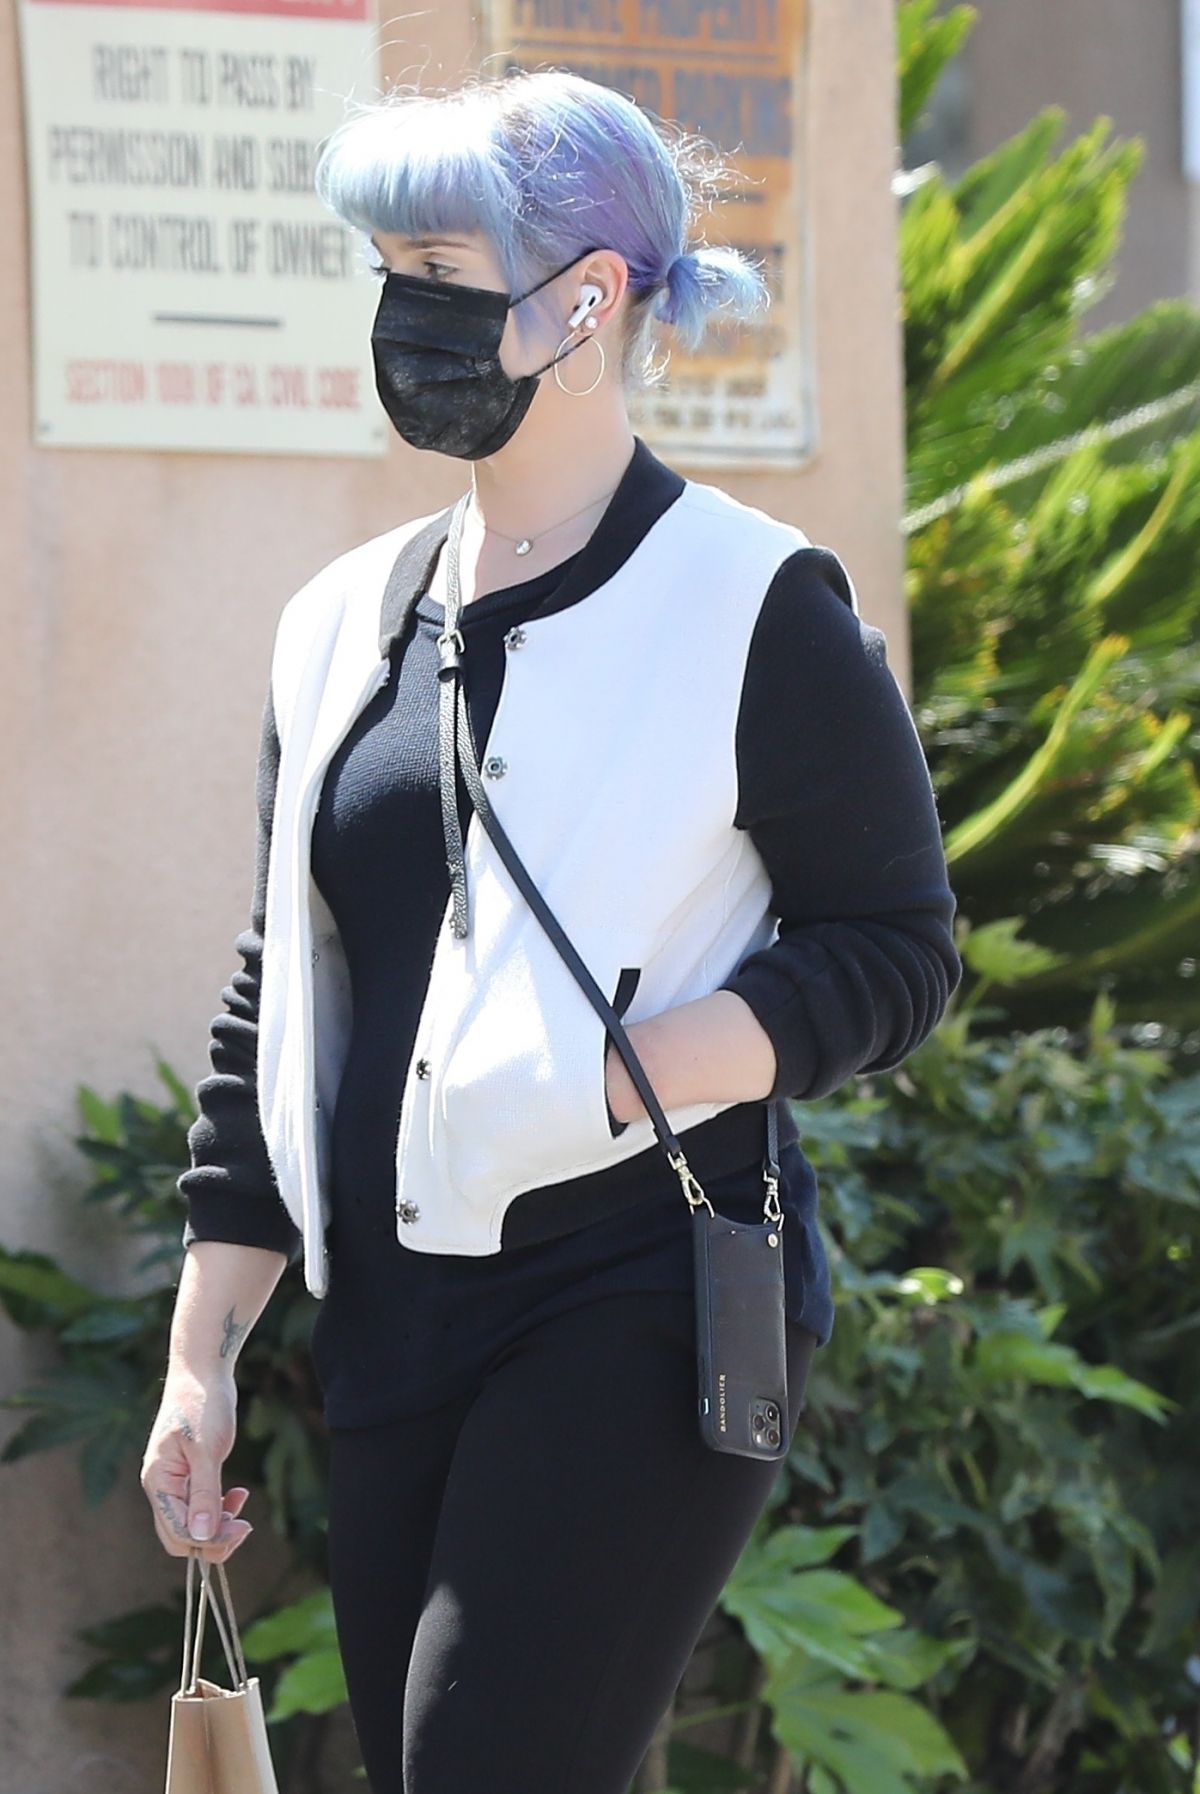 KELLY OSBOURNE Wearing Black Mask Out in Los Angeles 04/21/2020 - HawtCelebs